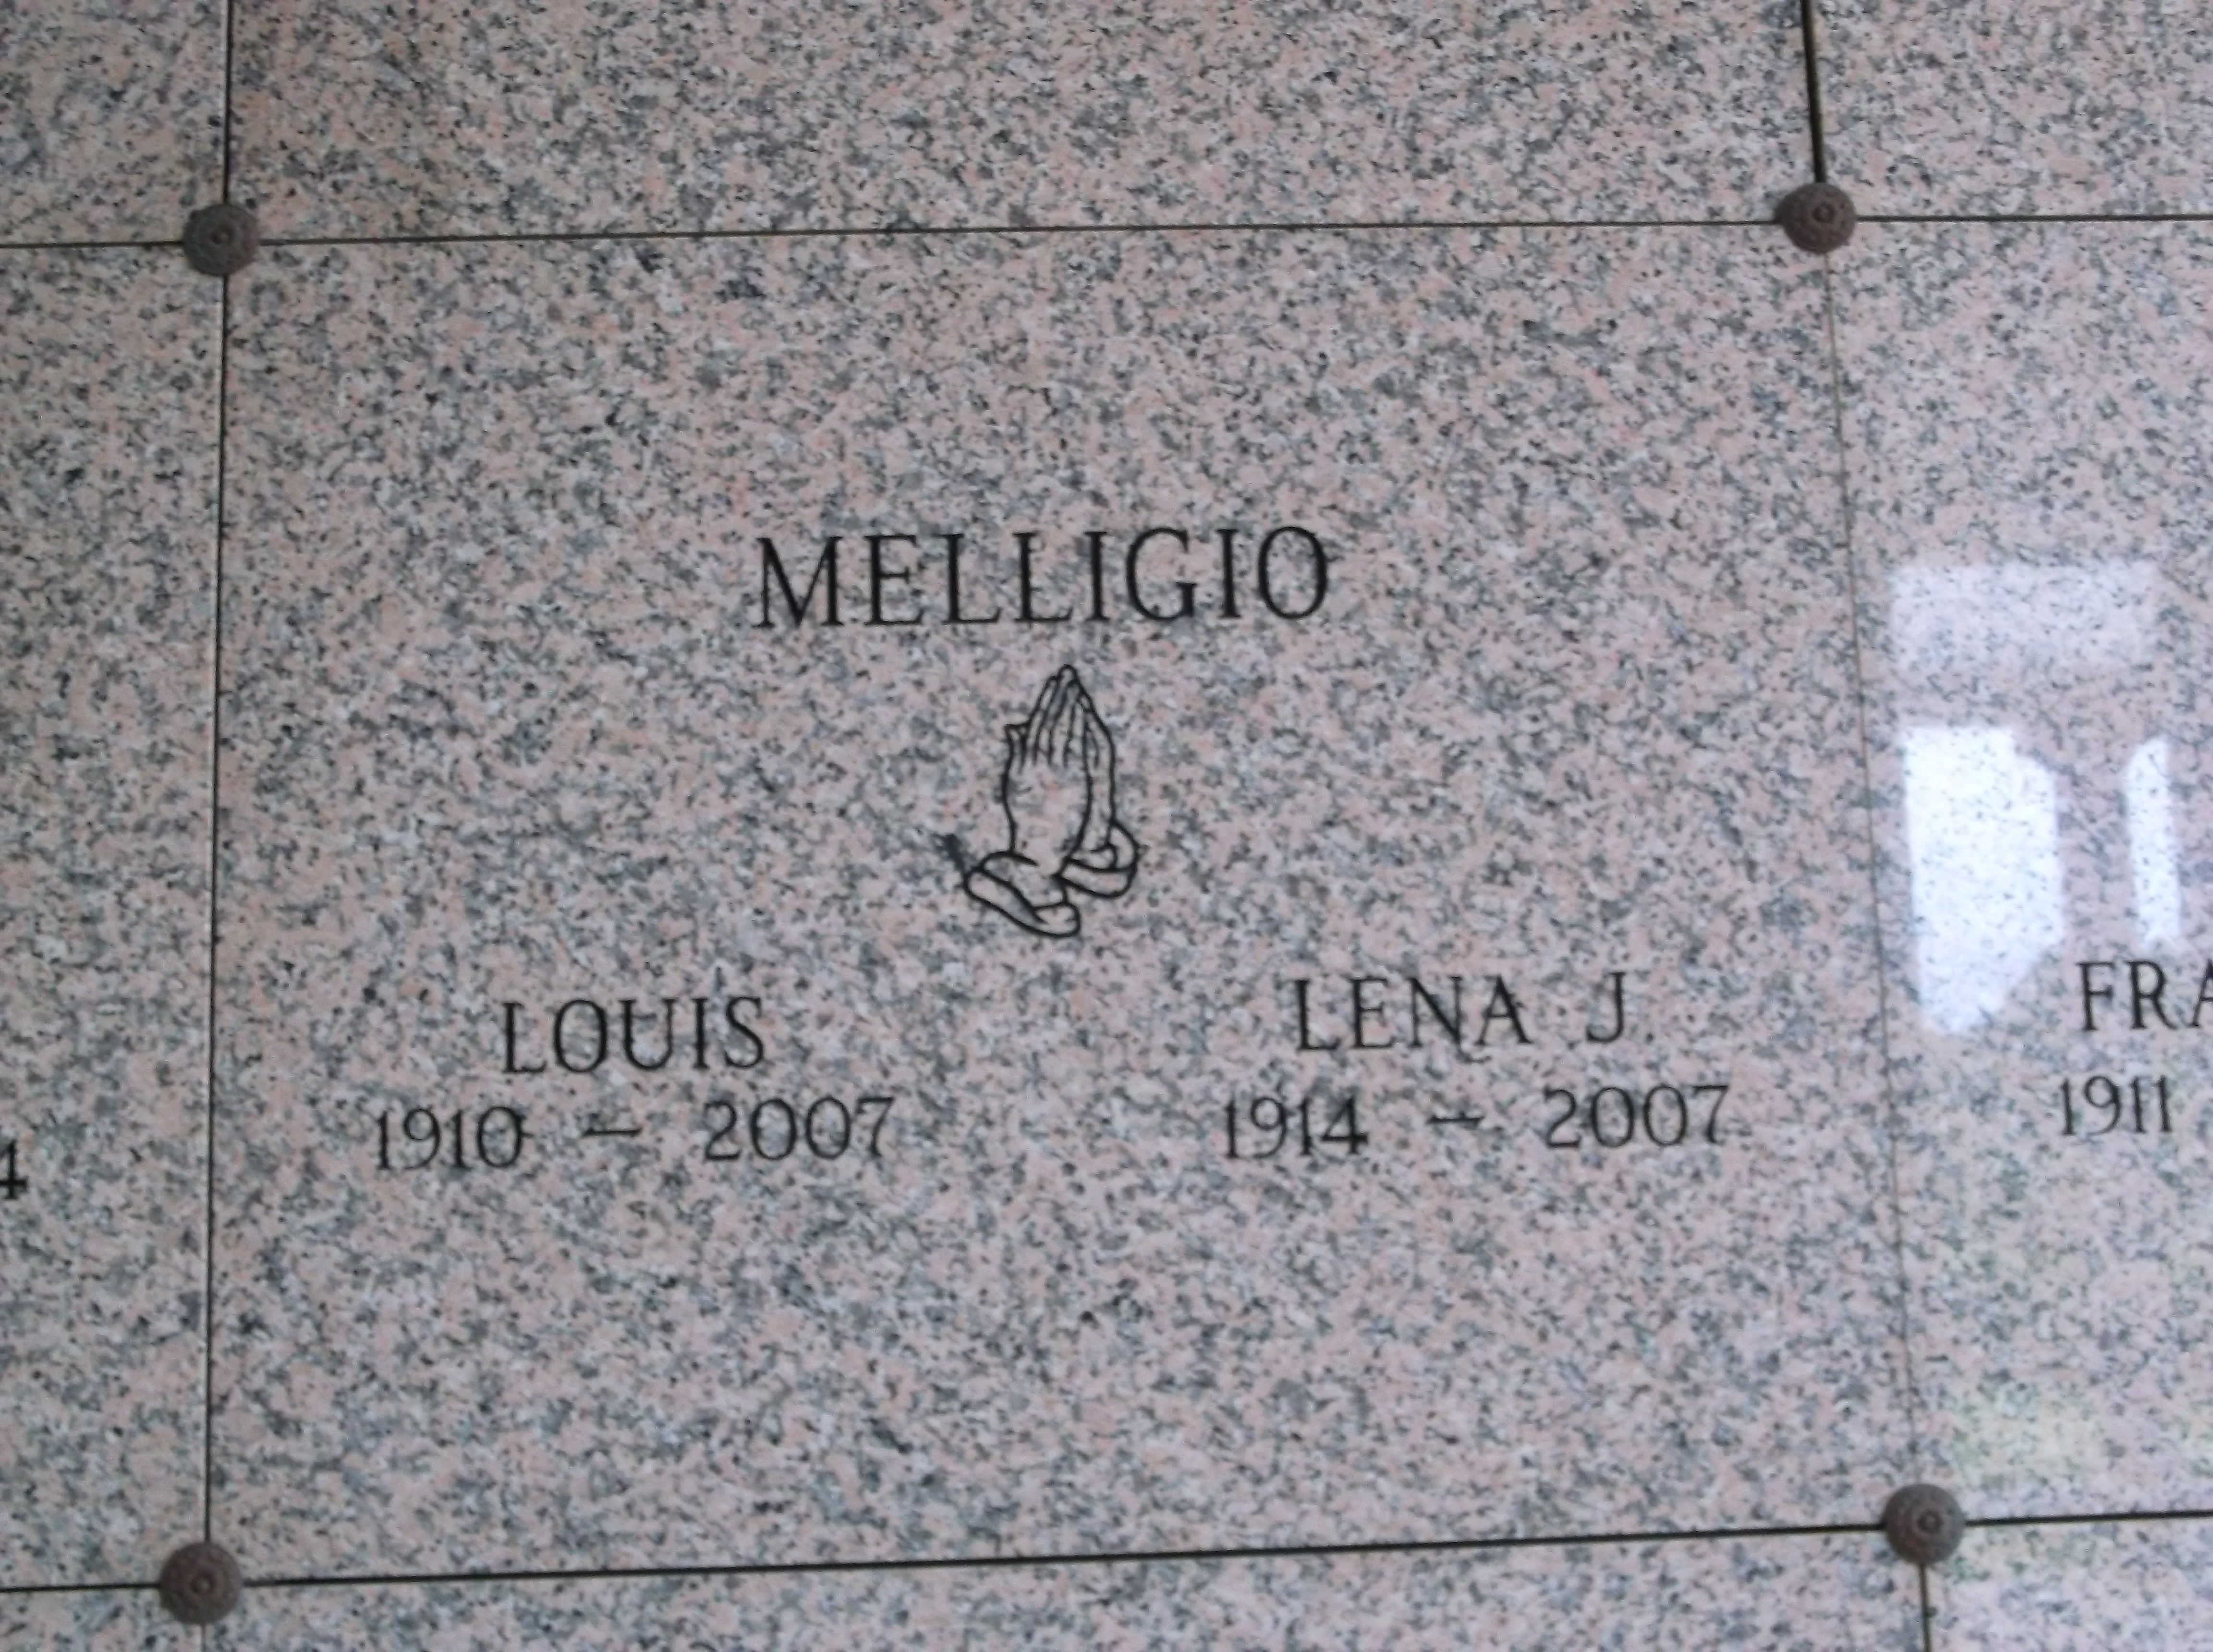 Louis Melligio